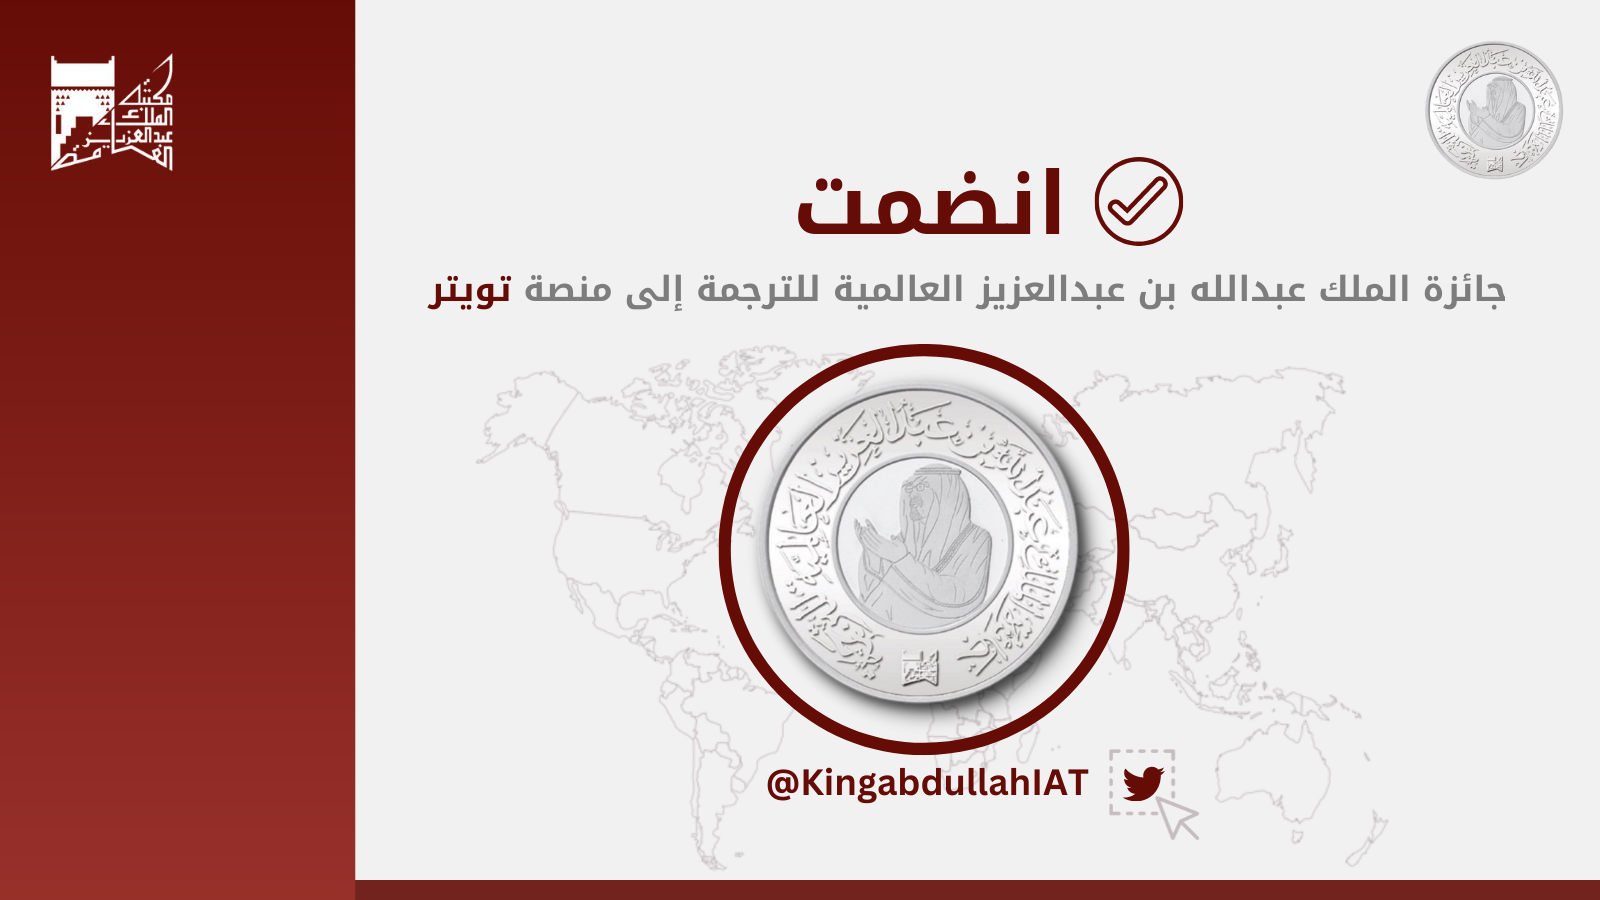 تدشين حساب جائزة الملك عبدالله بن عبدالعزيز العالمية للترجمة  على منصة تويتر